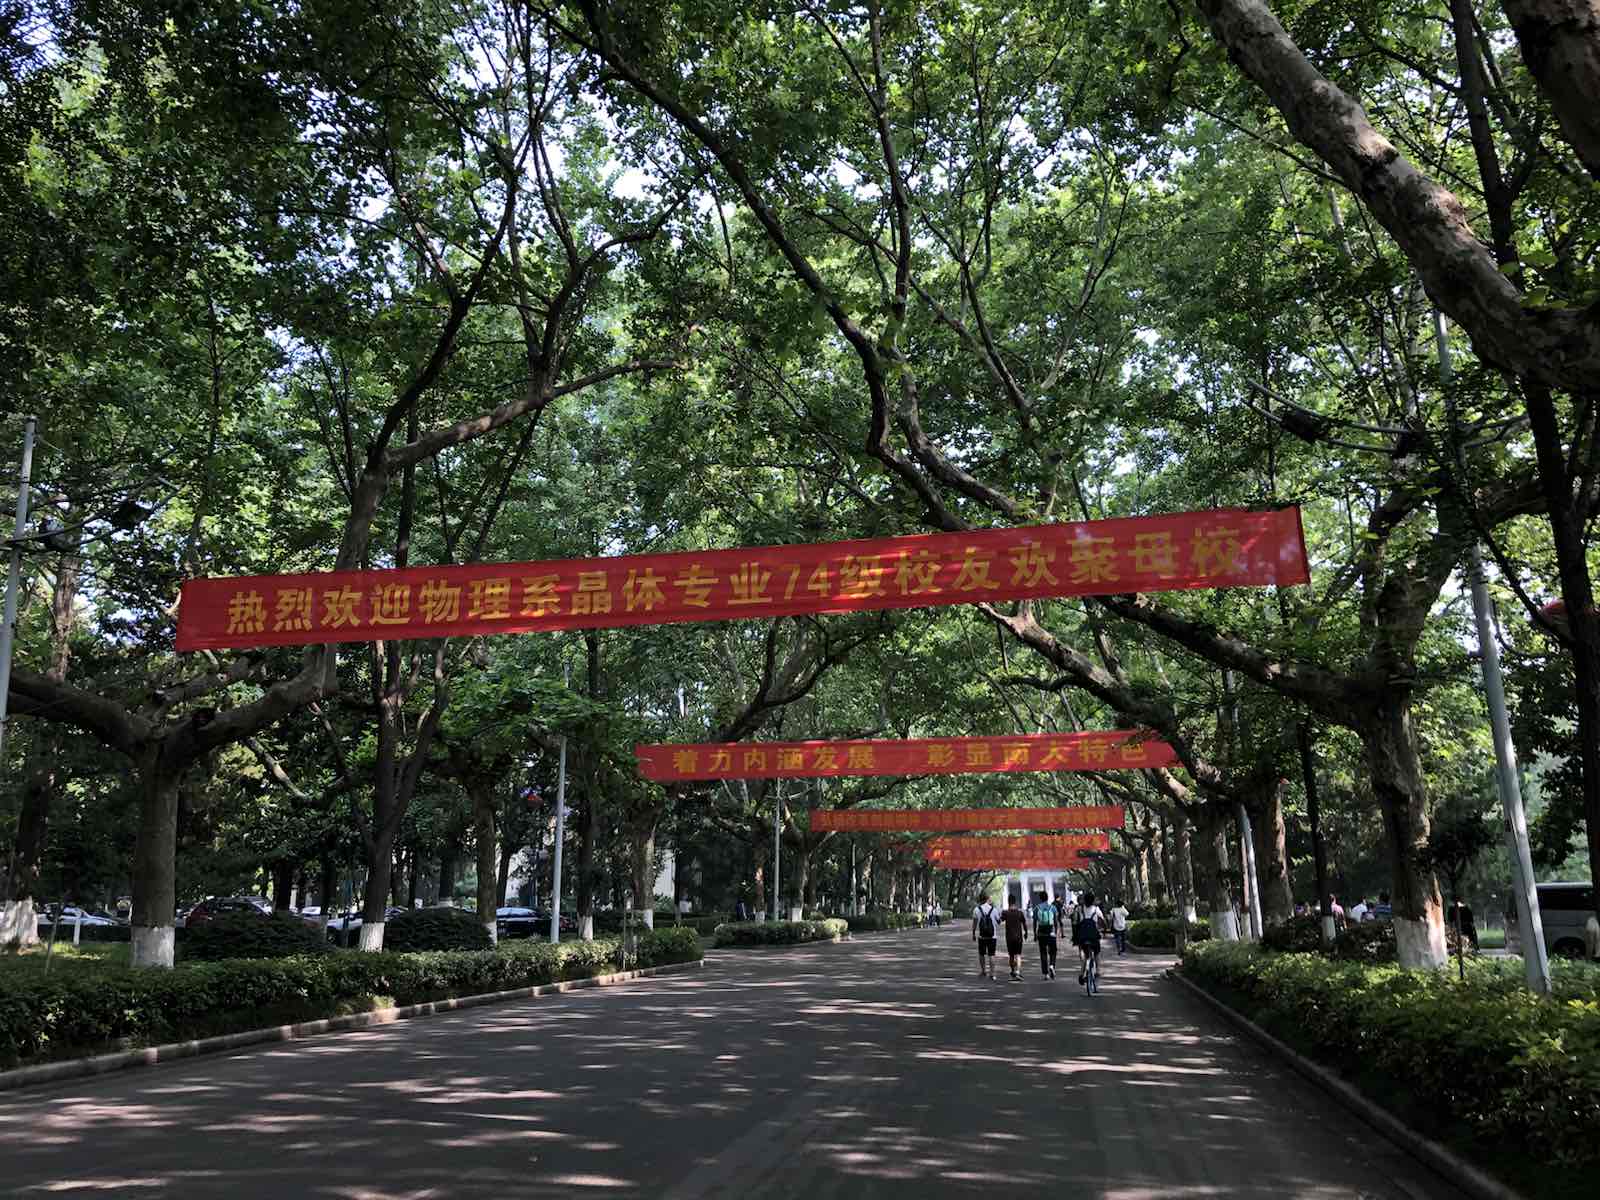 校园，一向是巨大的吸引南京大学让我想起自己的母校，位处闹市，小小的校园